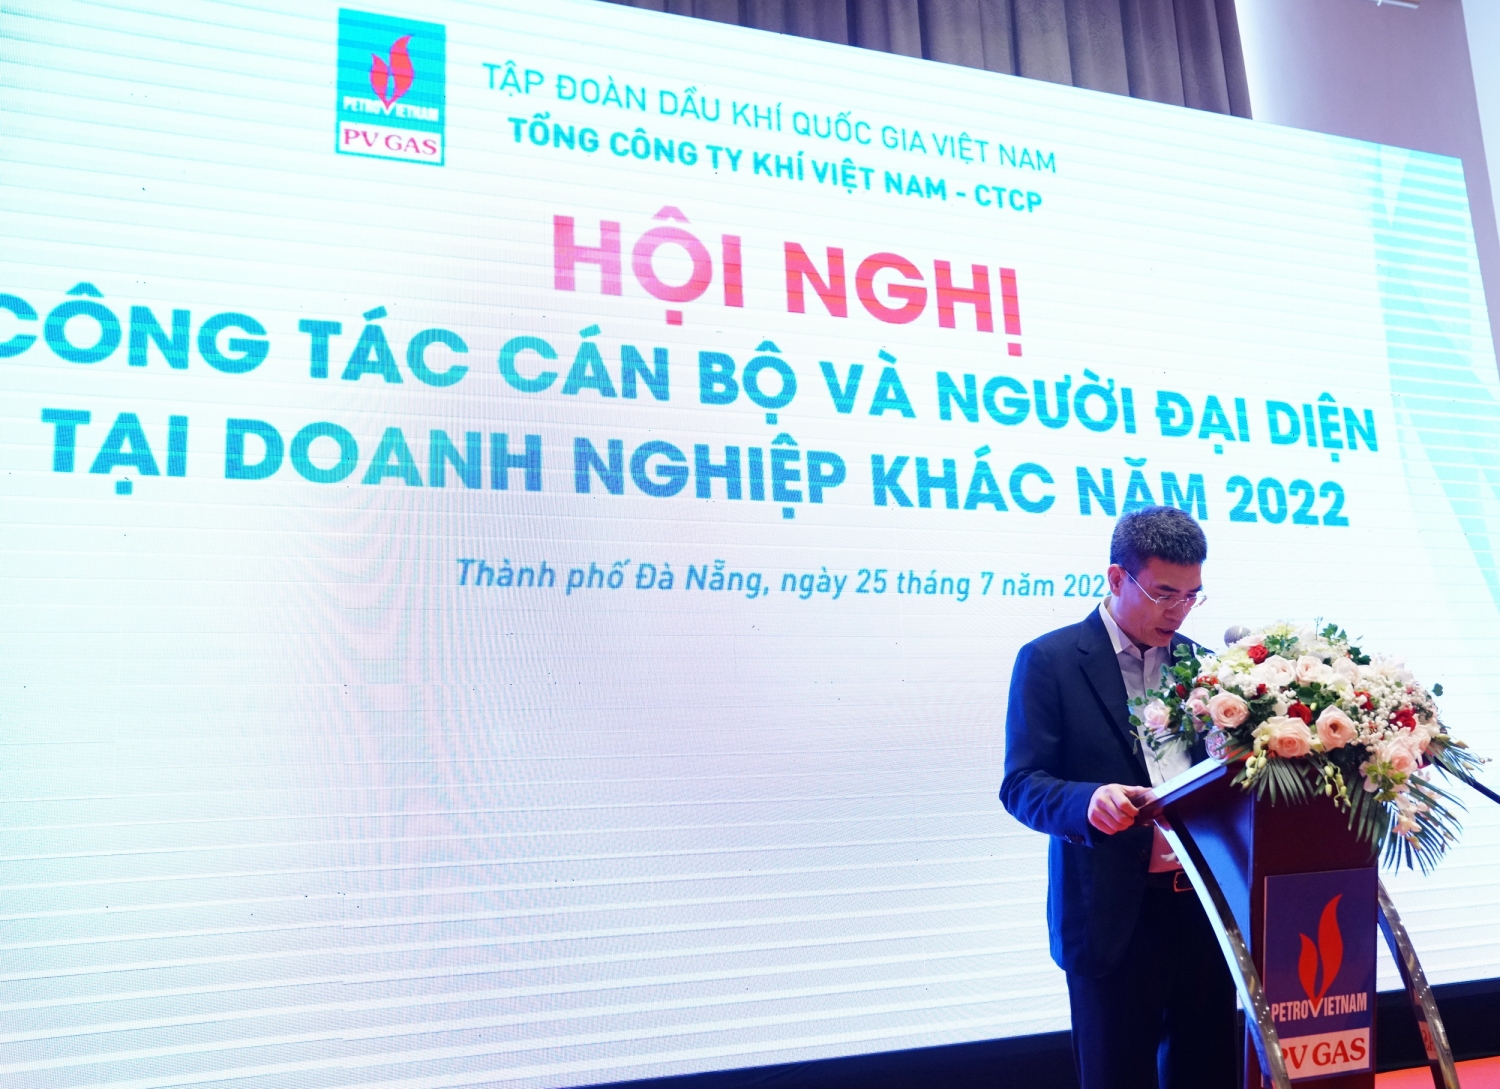 Đồng chí Dương Mạnh Sơn - Bí thư Đảng ủy, Chủ tịch HĐQT PV GAS phát biểu khai mạc Hội nghị về công tác cán bộ và Người đại diện của PV GAS tại doanh nghiệp khác năm 2022